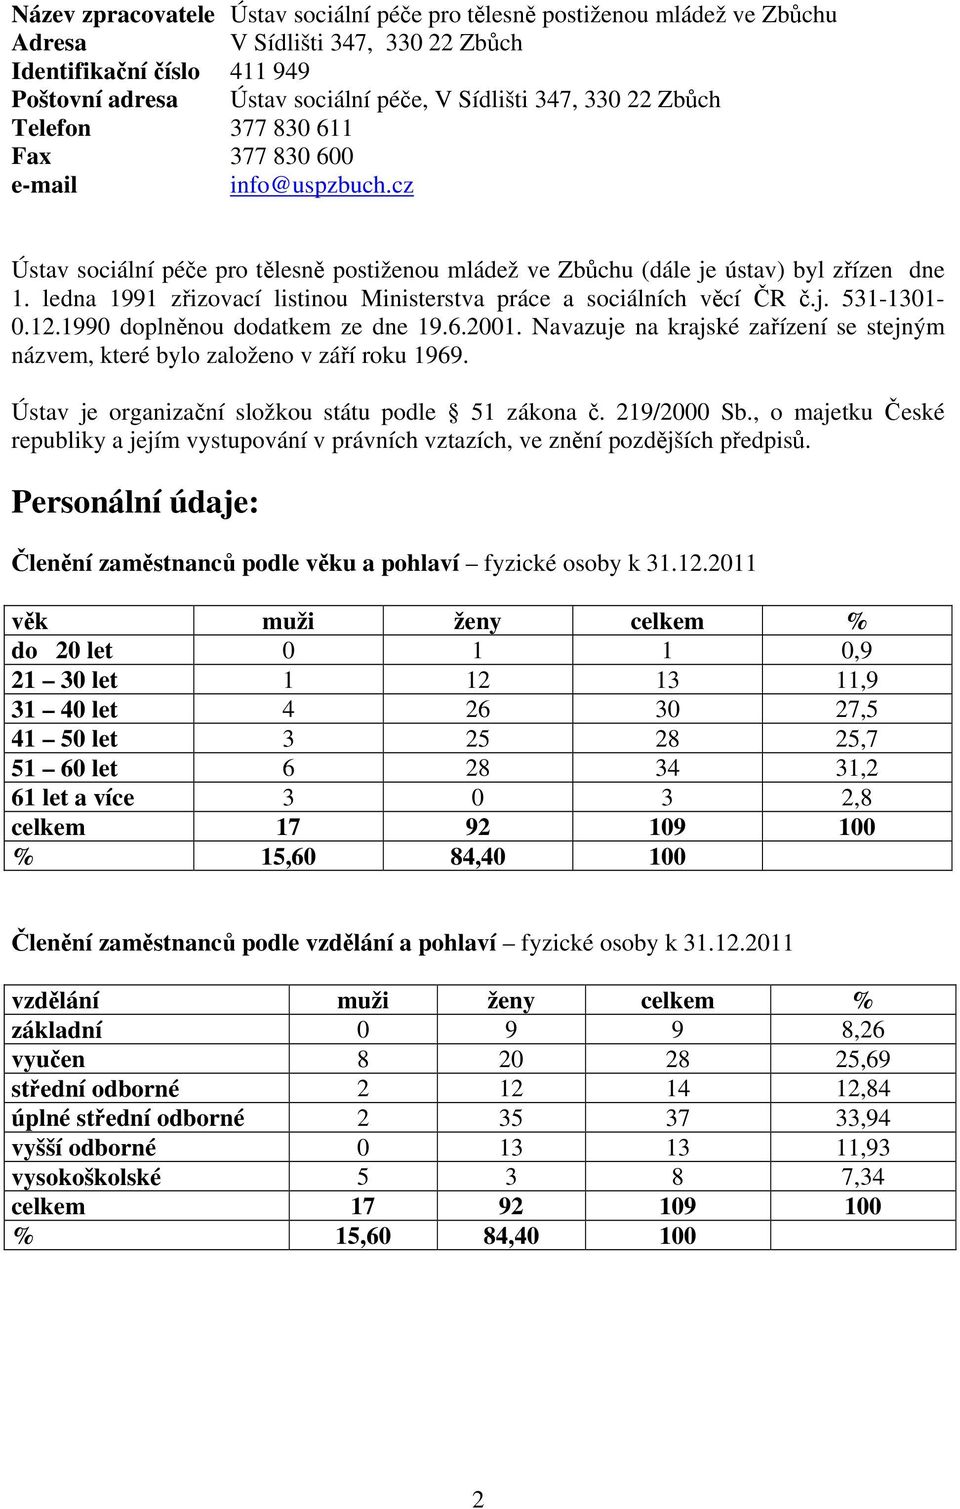 ledna 1991 zřizovací listinou Ministerstva práce a sociálních věcí ČR č.j. 531-1301- 0.12.1990 doplněnou dodatkem ze dne 19.6.2001.